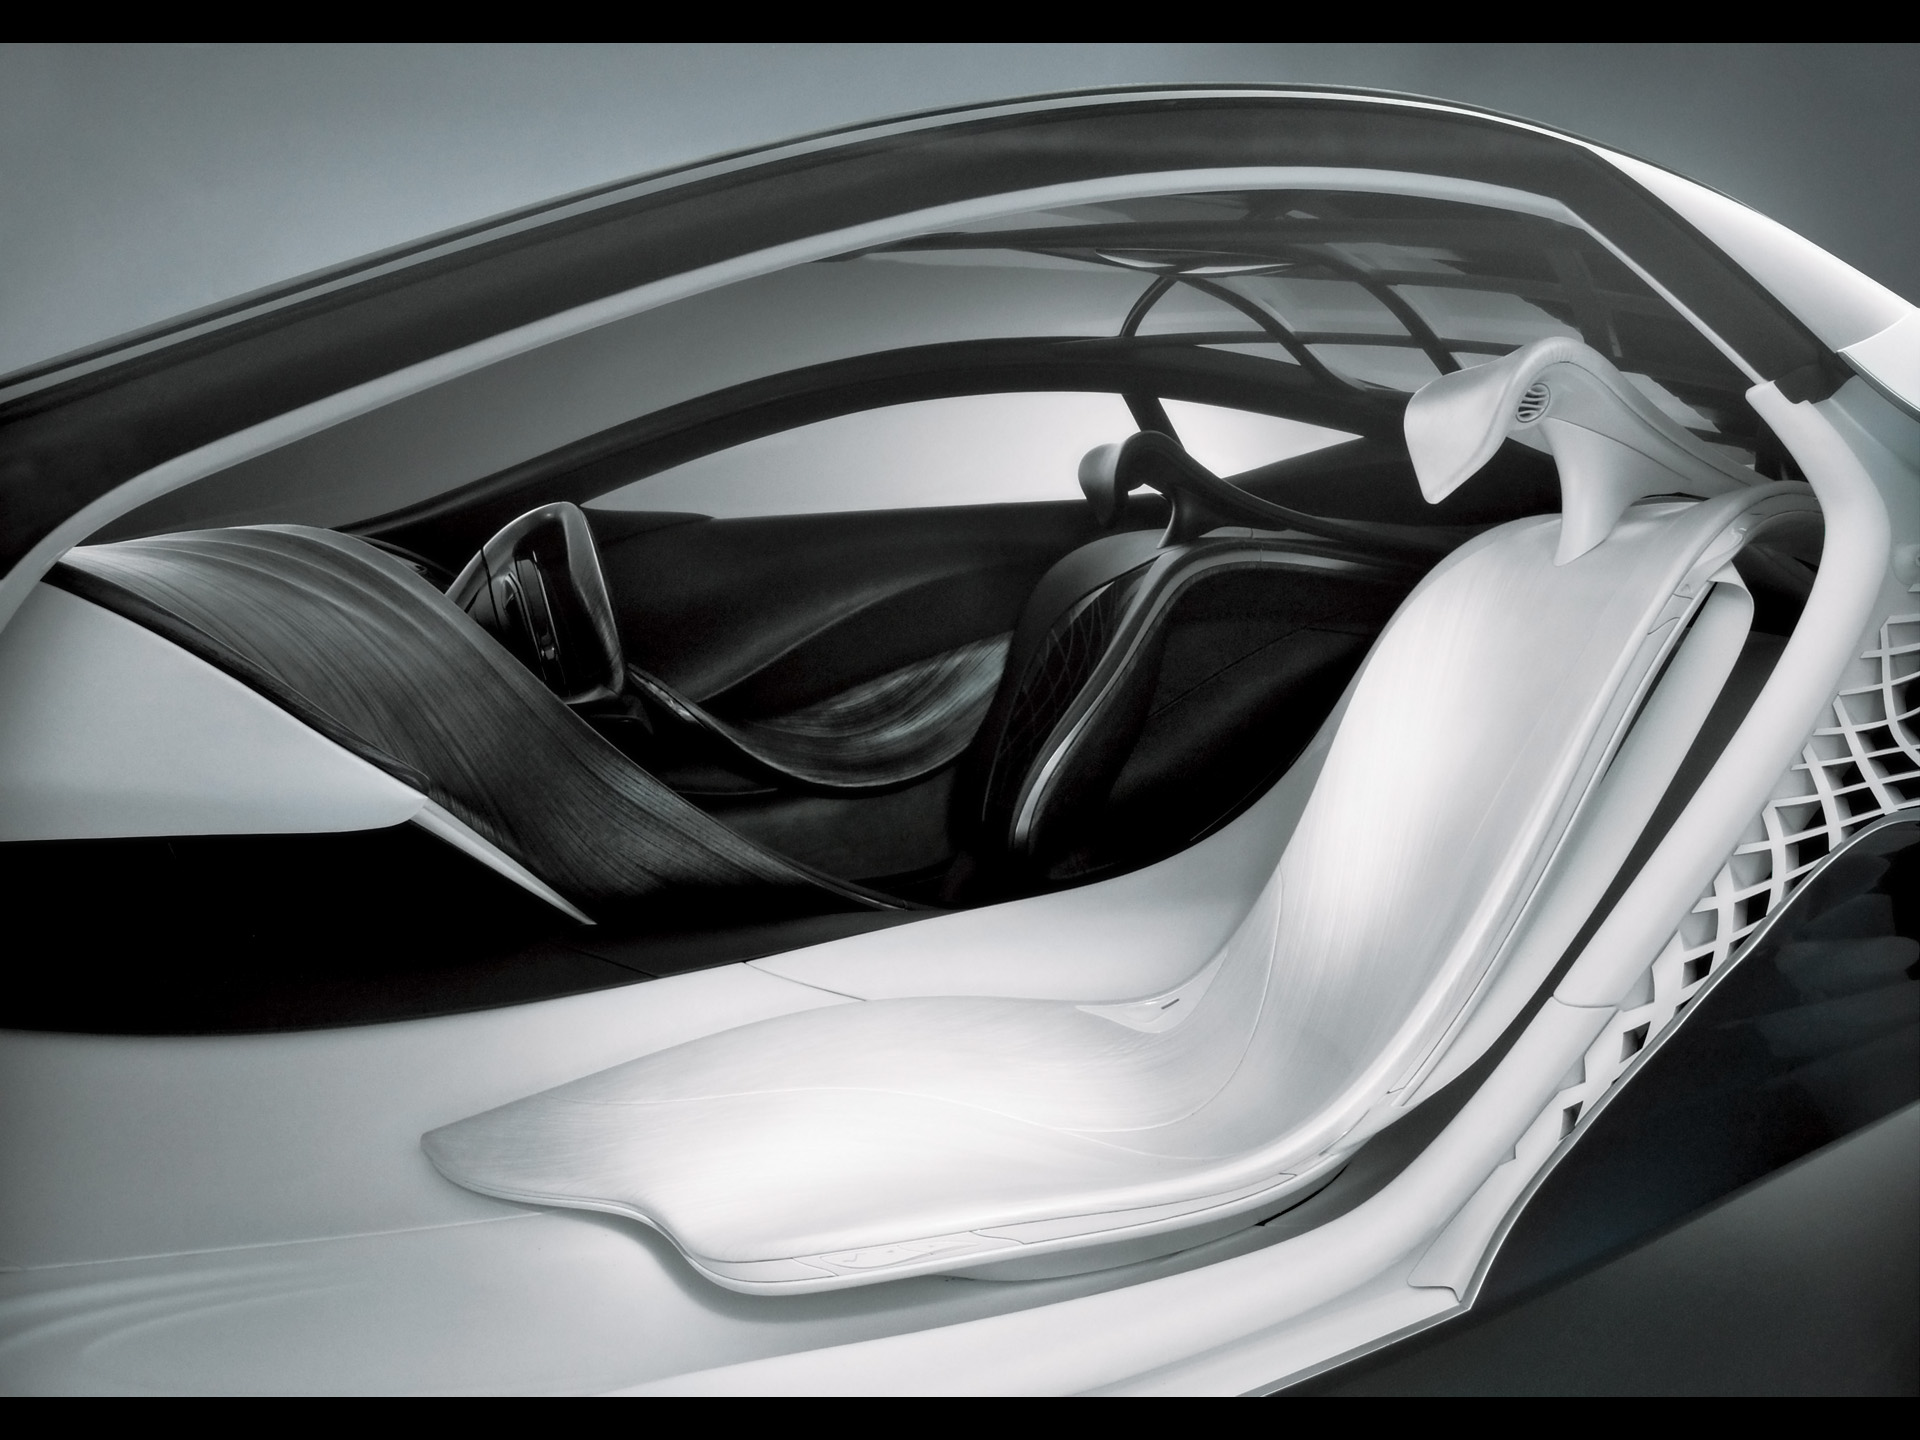 2007 Mazda Taiki Concept - Interior - 1920x1440 - Wallpaper